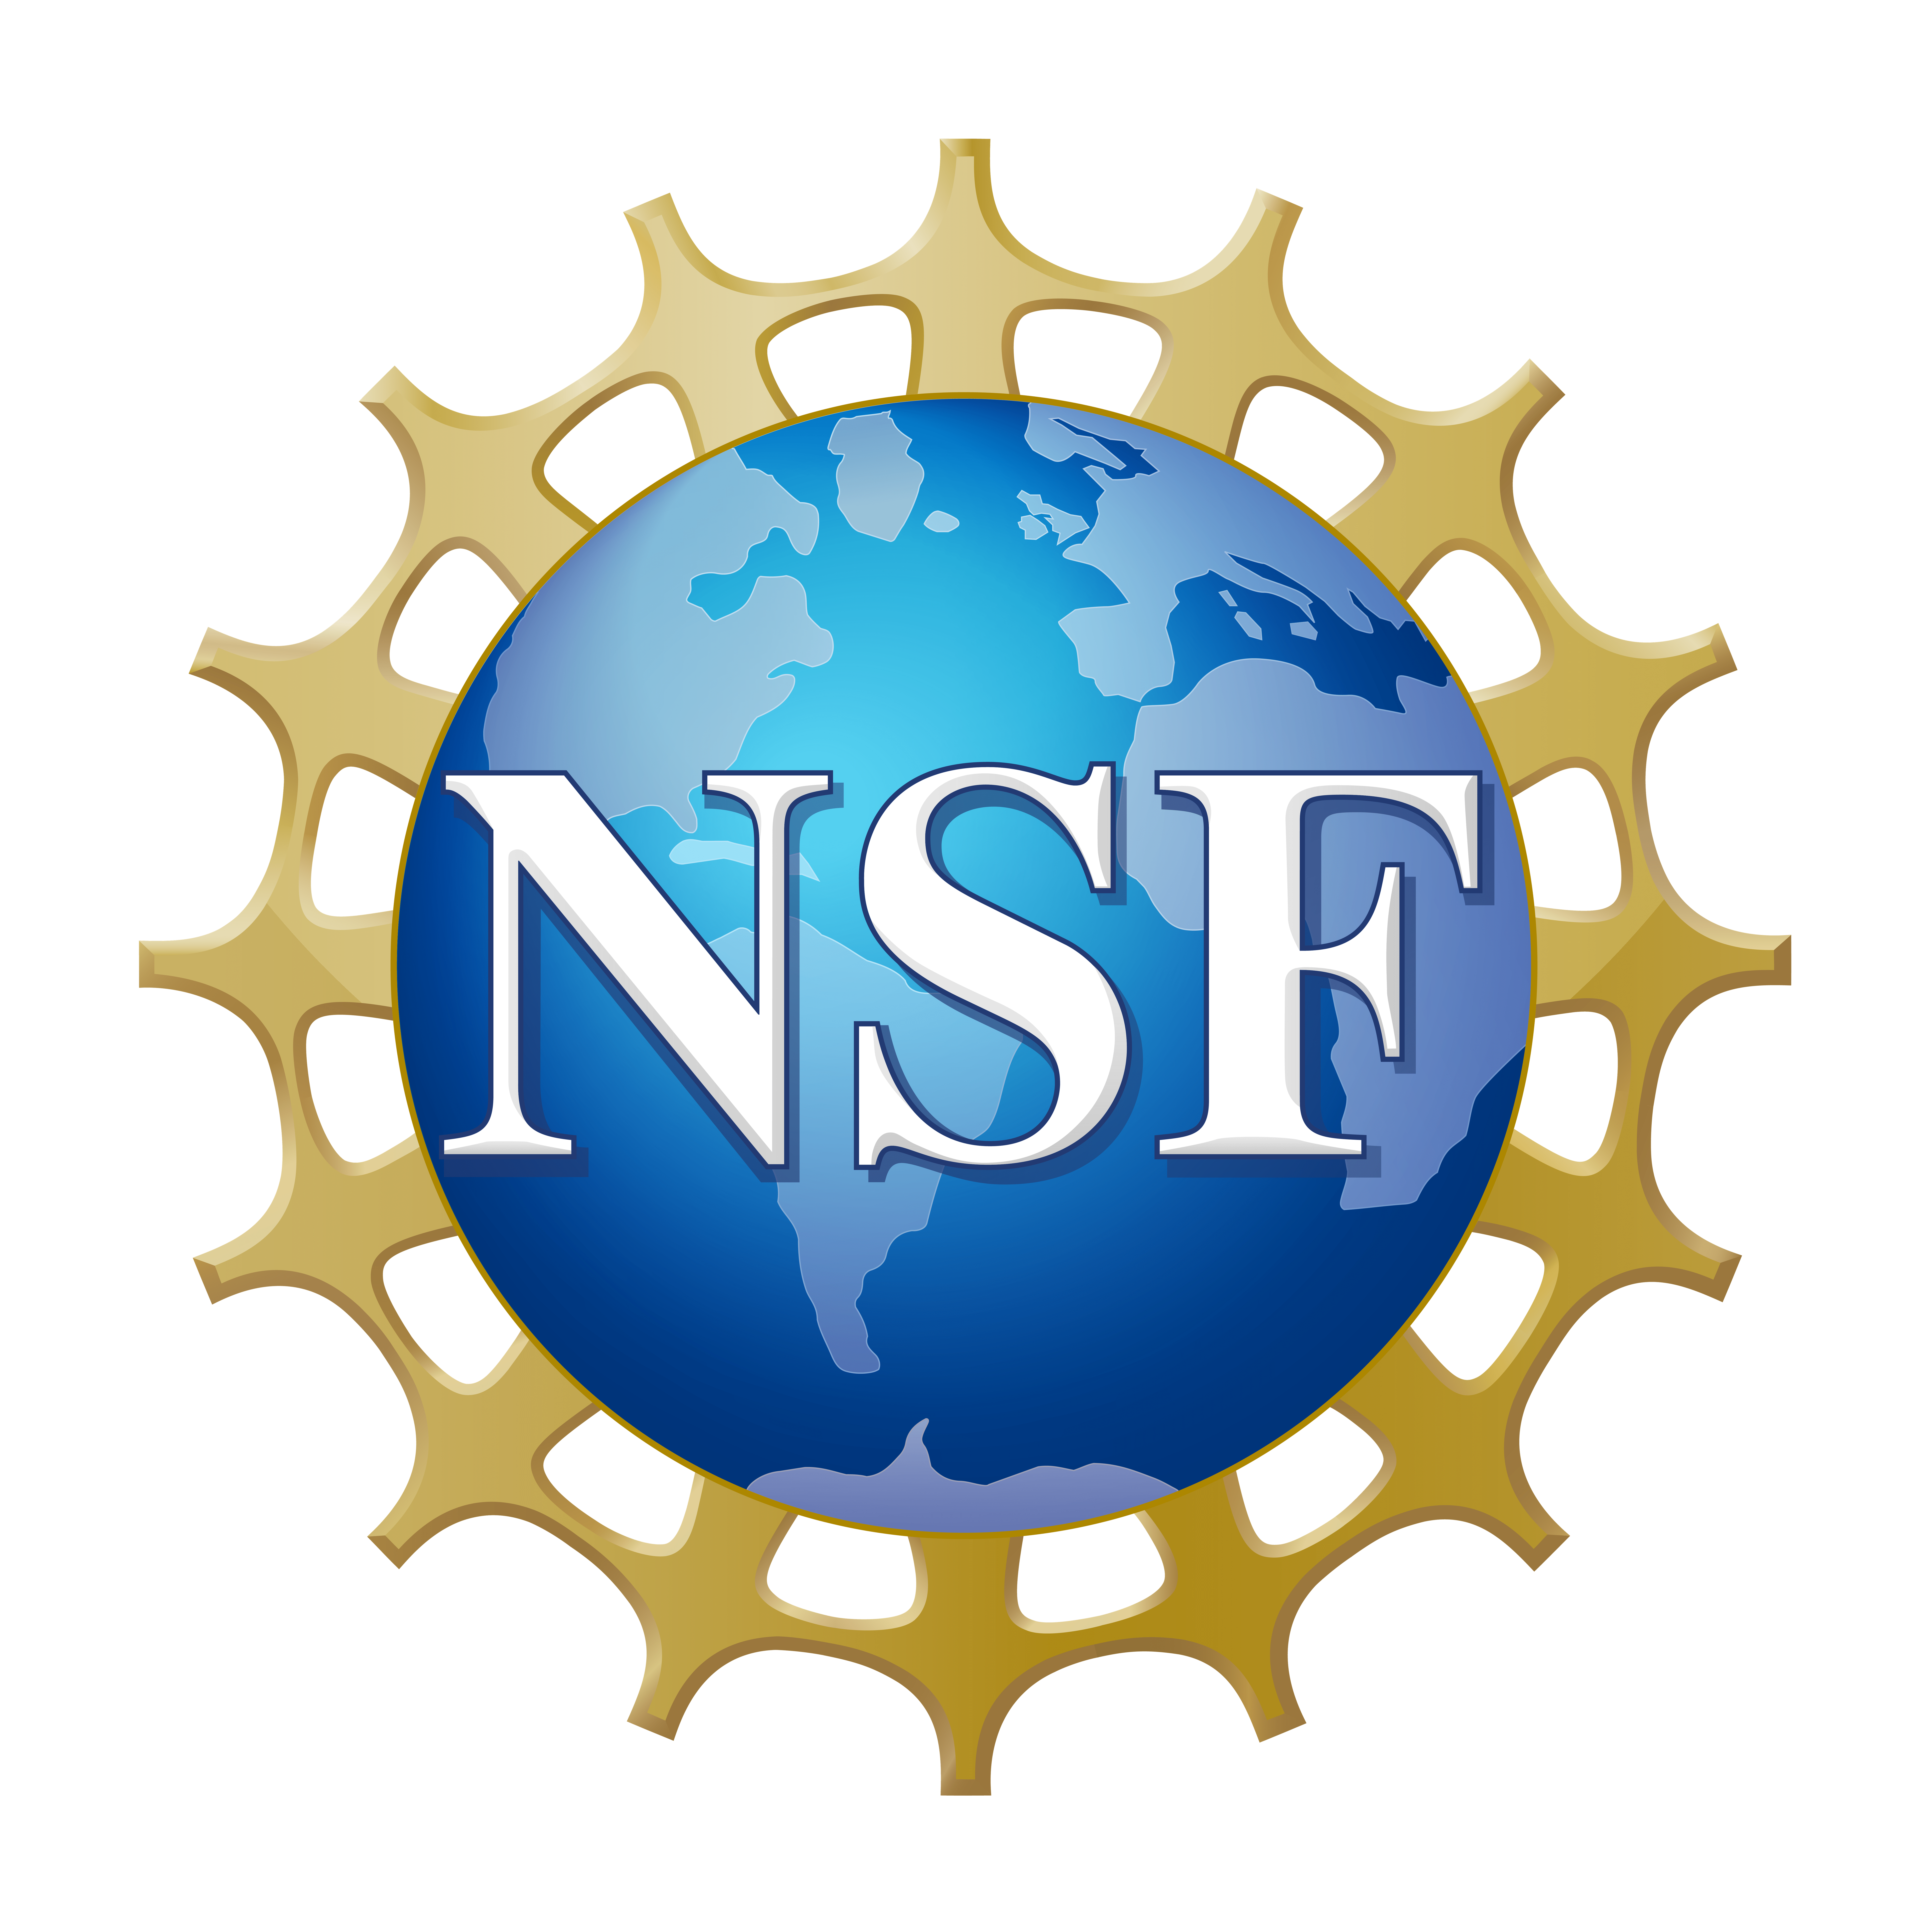 Logo of NSF